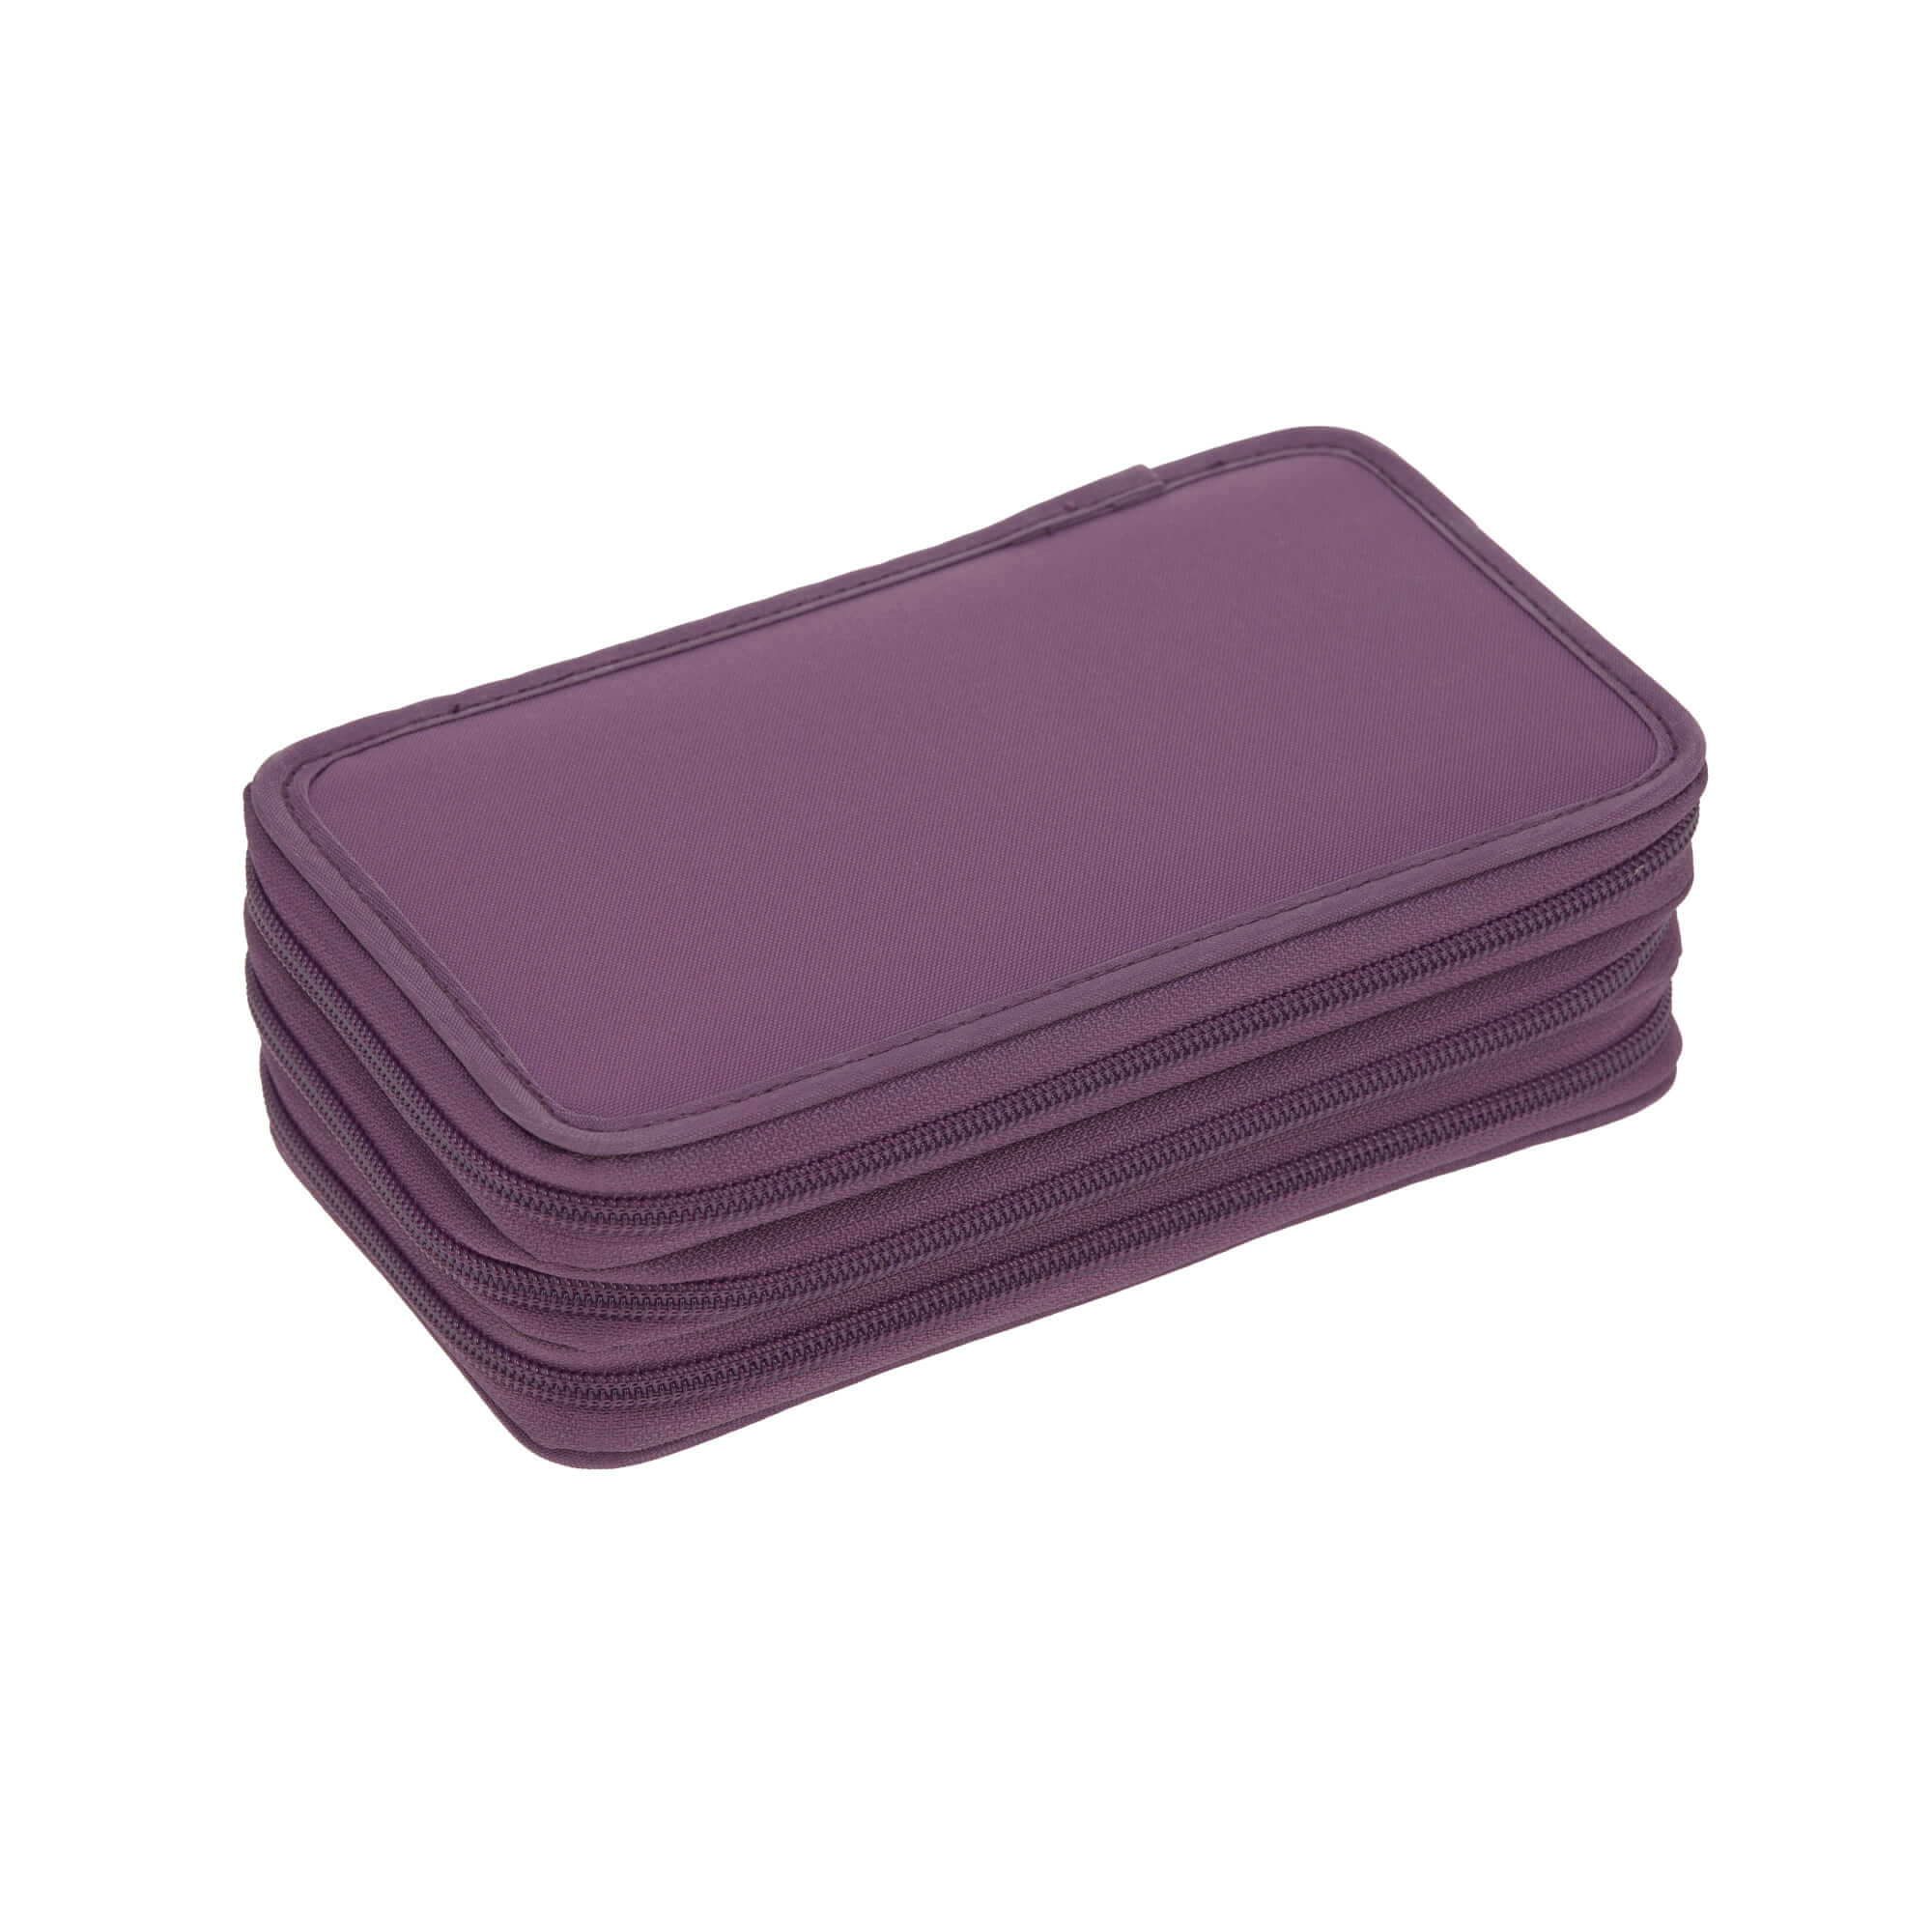 Lässig Federmäppchen 3 fach Purple günstig kaufen im Online Shop